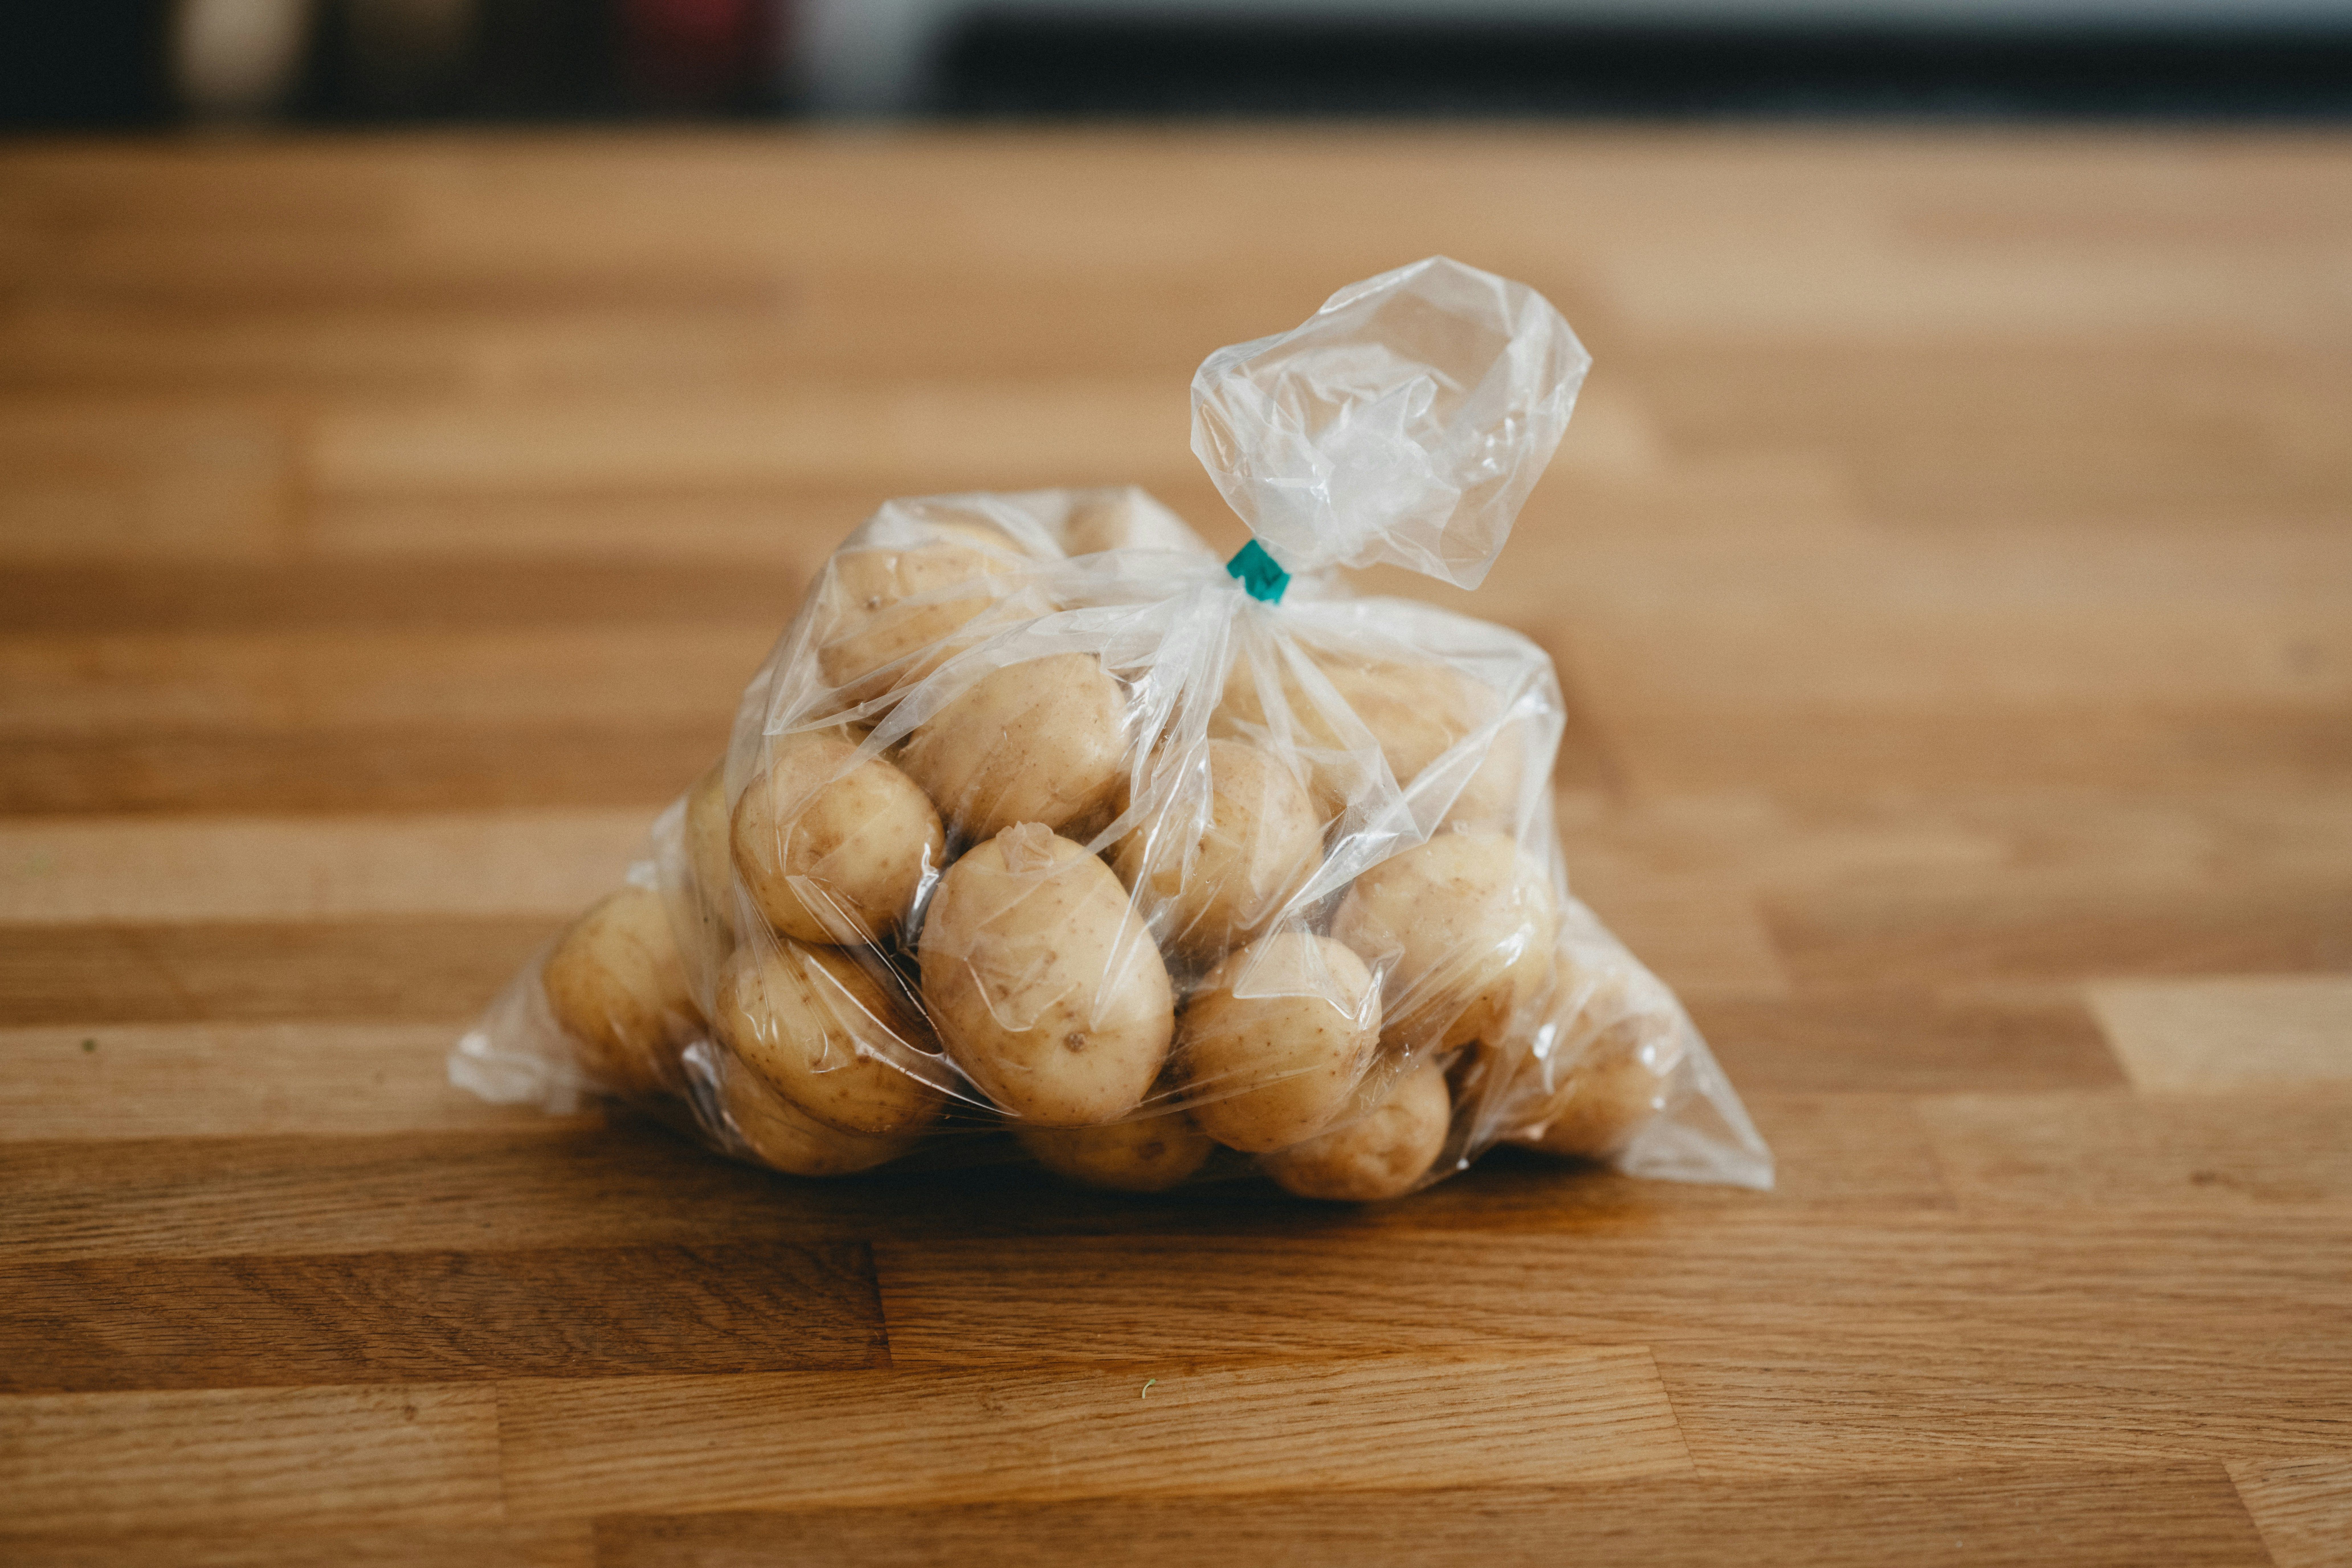 Семья в Британии нашла в пакете с картофелем змею